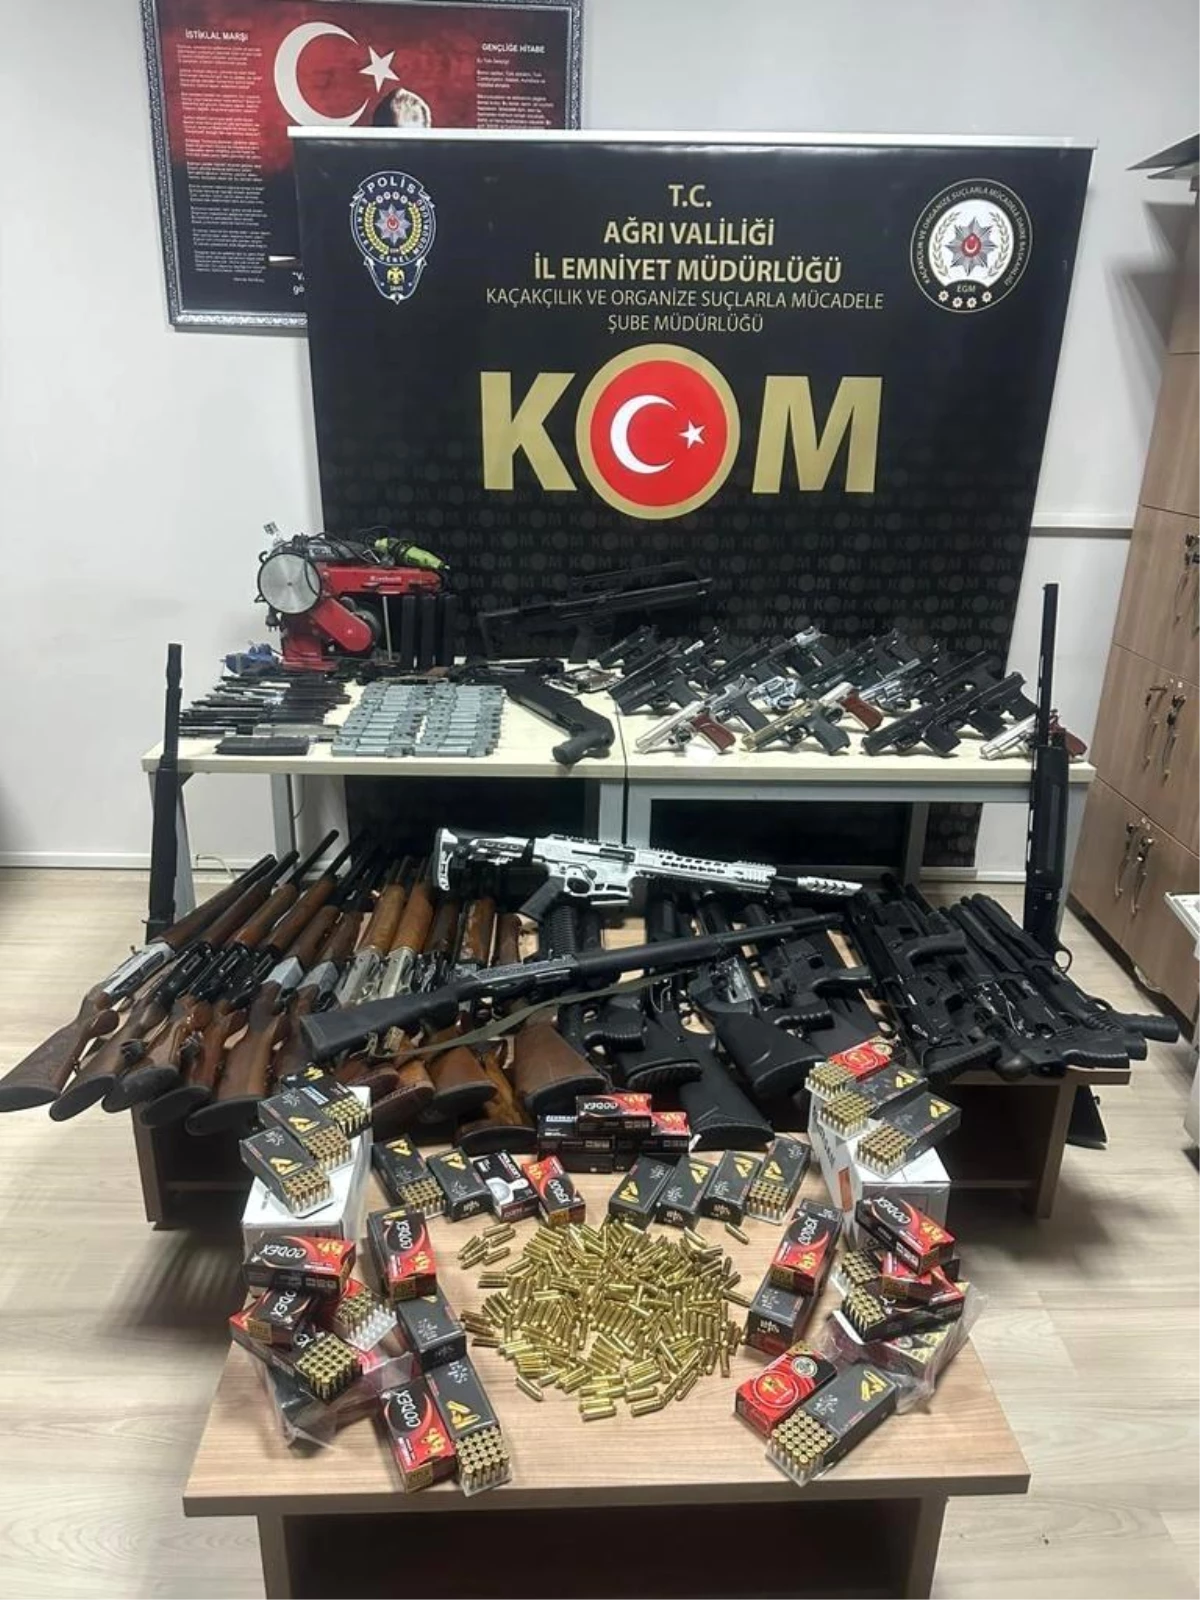 Ağrı\'da Kuru Sıkı Tabancaları Ateşli Silah Haline Getirerek Piyasaya Süren 2 Kişi Gözaltına Alındı